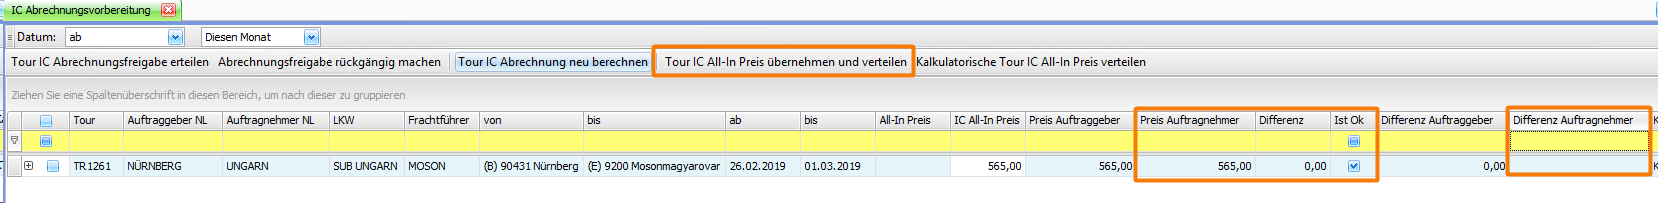 Release Veroeffentliche Releases Neu in Version 8.8.26 Kaufmaennische Intercompany-Abrechnung (FE 161148)image2019-2-27 16 28 25.png